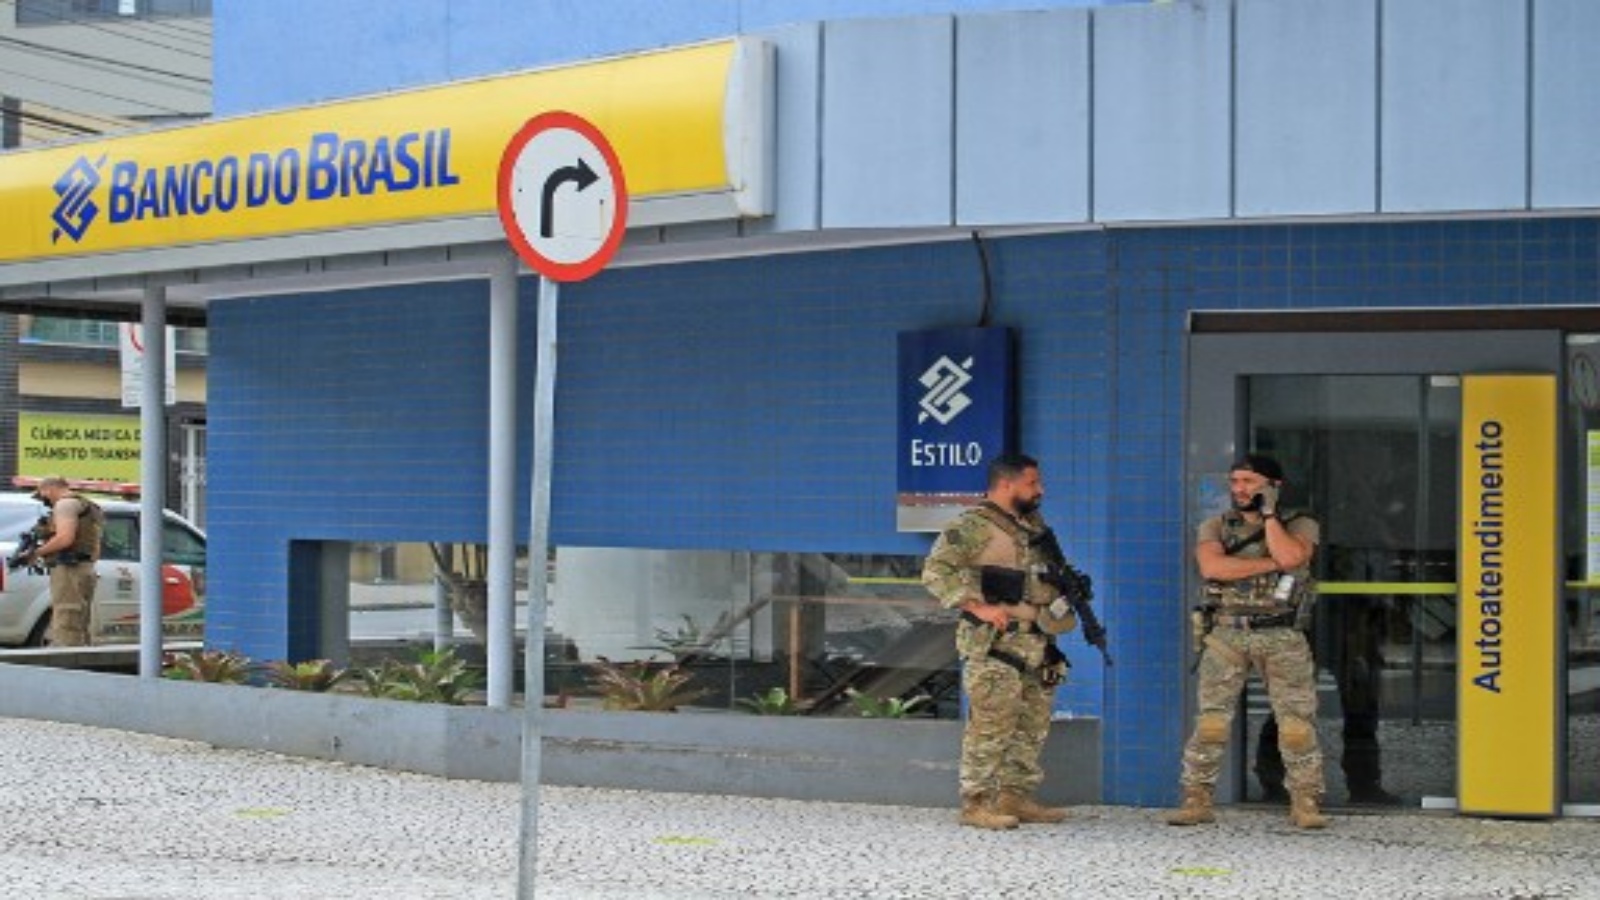 ضباط الشرطة أمام البنك الذي ضربه اللصوص بعد منتصف الليل بقليل ، في كريشيوما ، البرازيل ، في 1 ديسمبر 2020